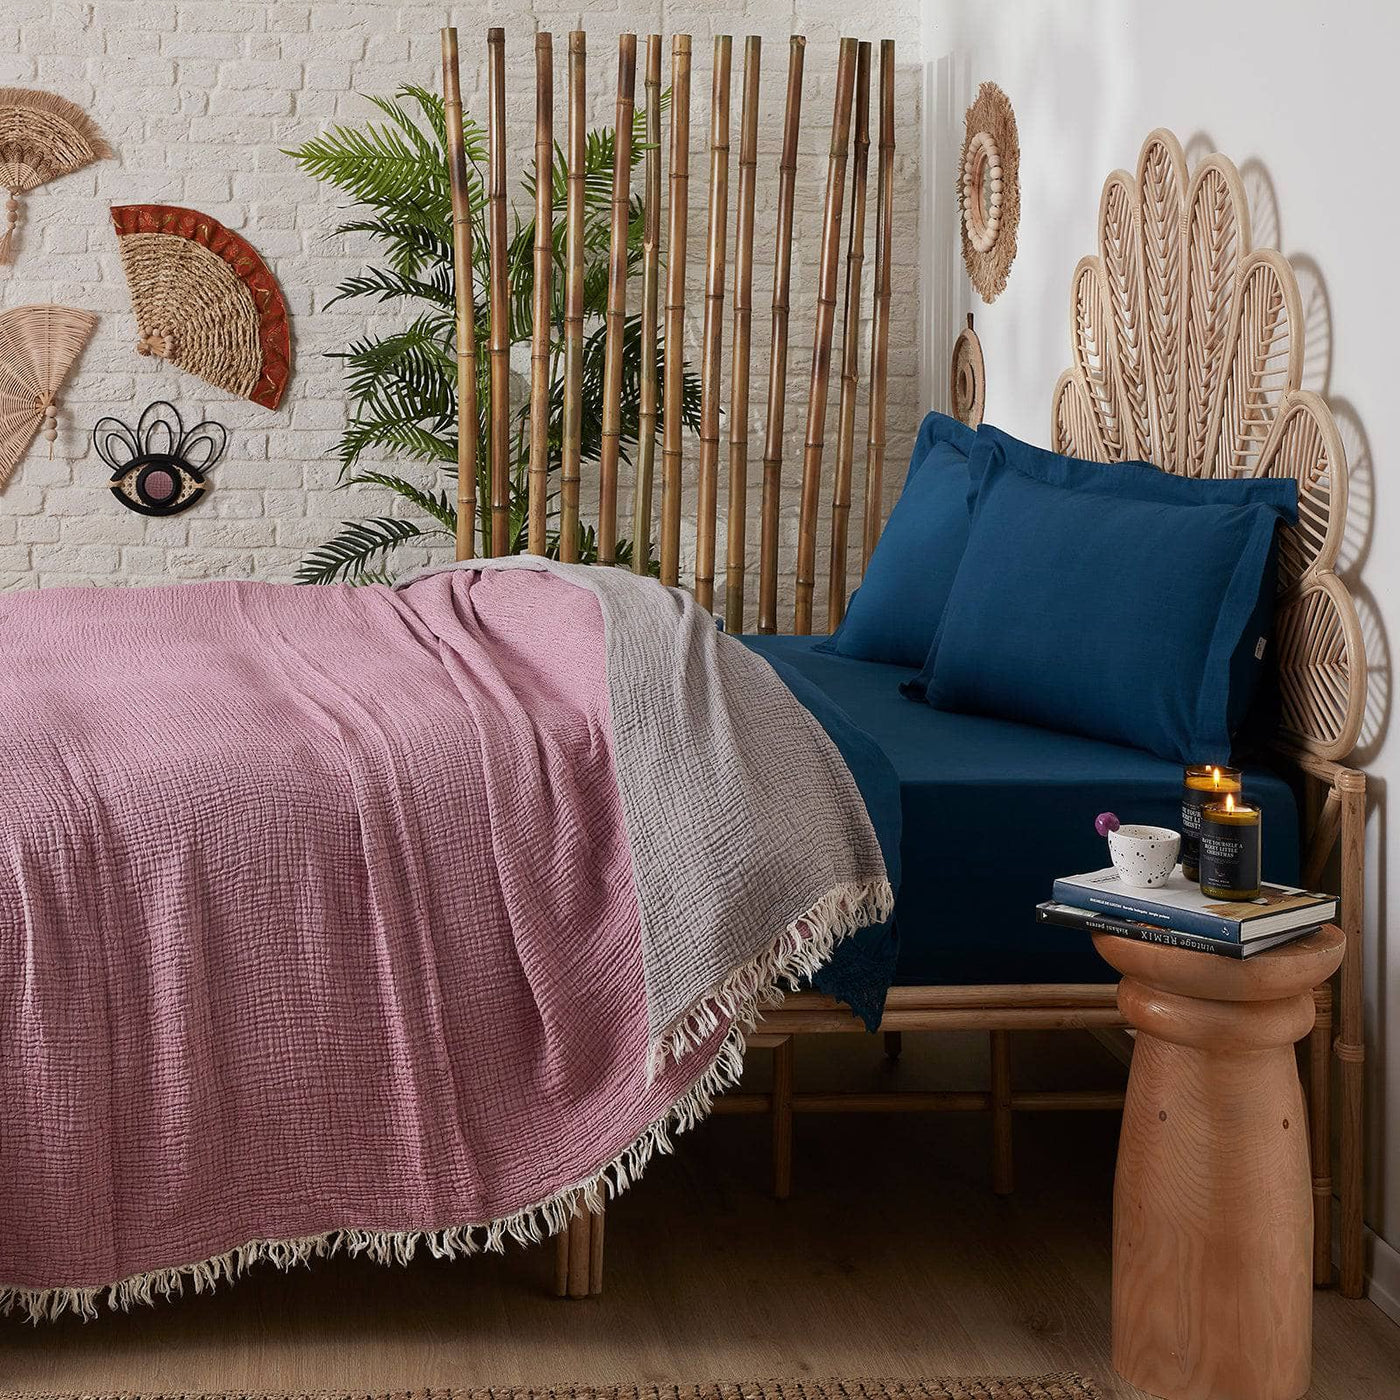 Birch Textured 100% Turkish Cotton Bedspread, Plum, 250x260 cm Blankets & Bedspreads sazy.com